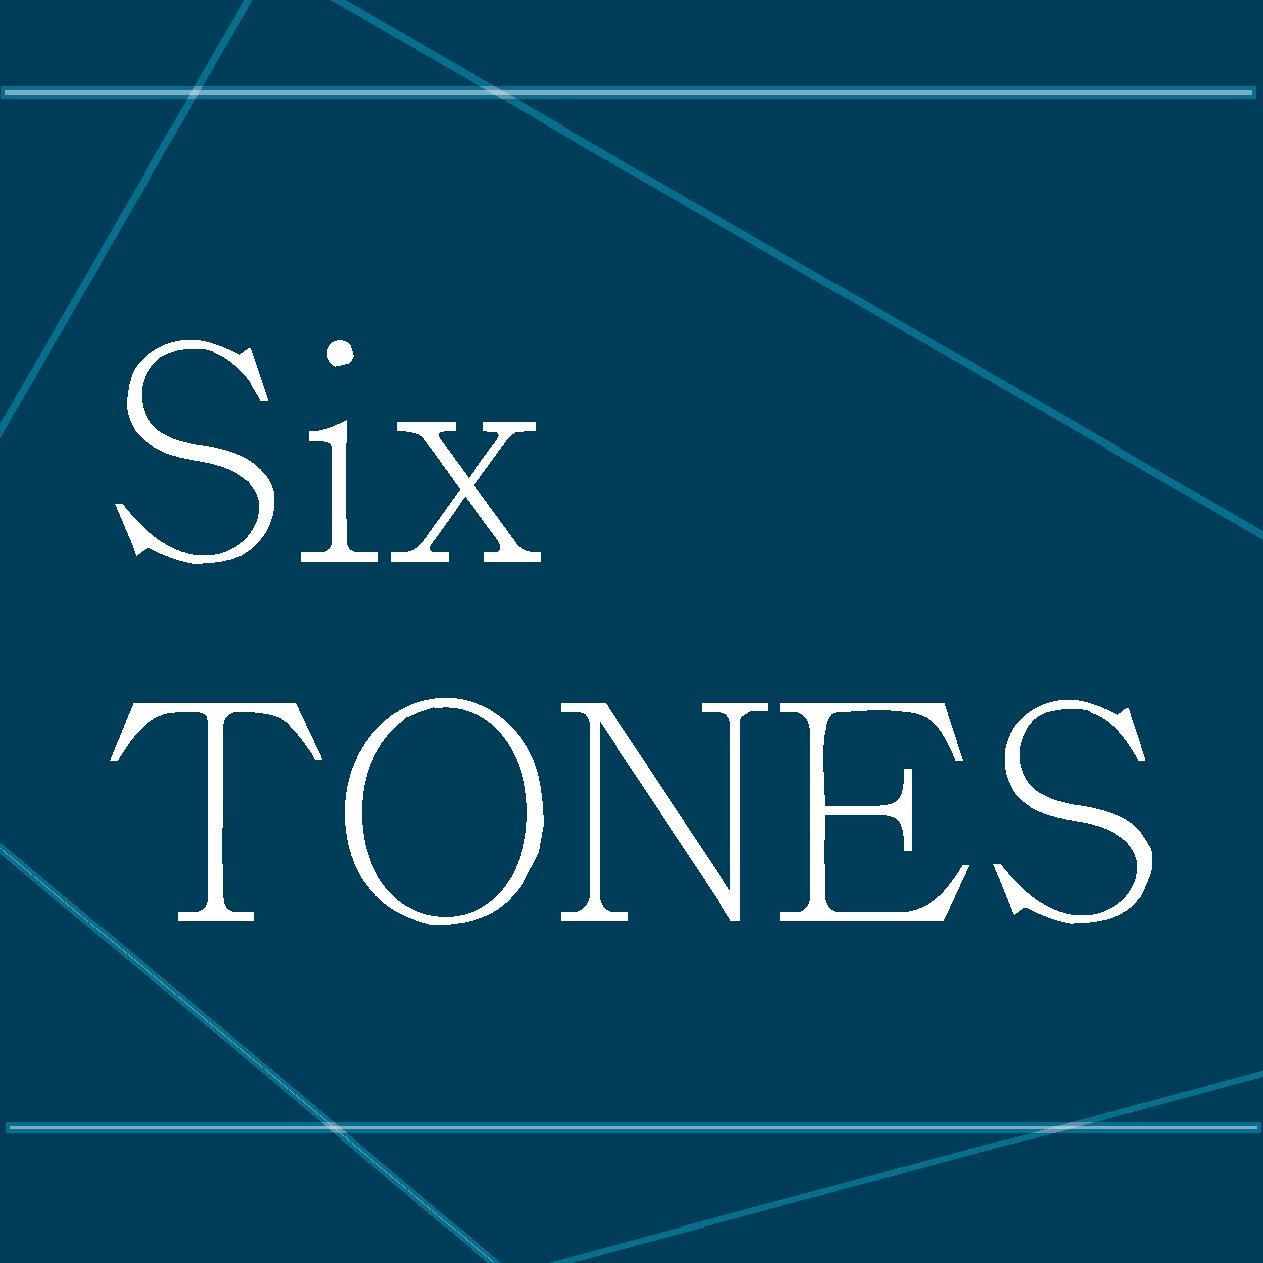 SixTONES 4thアルバム「THE VIBES」来年1月リリース